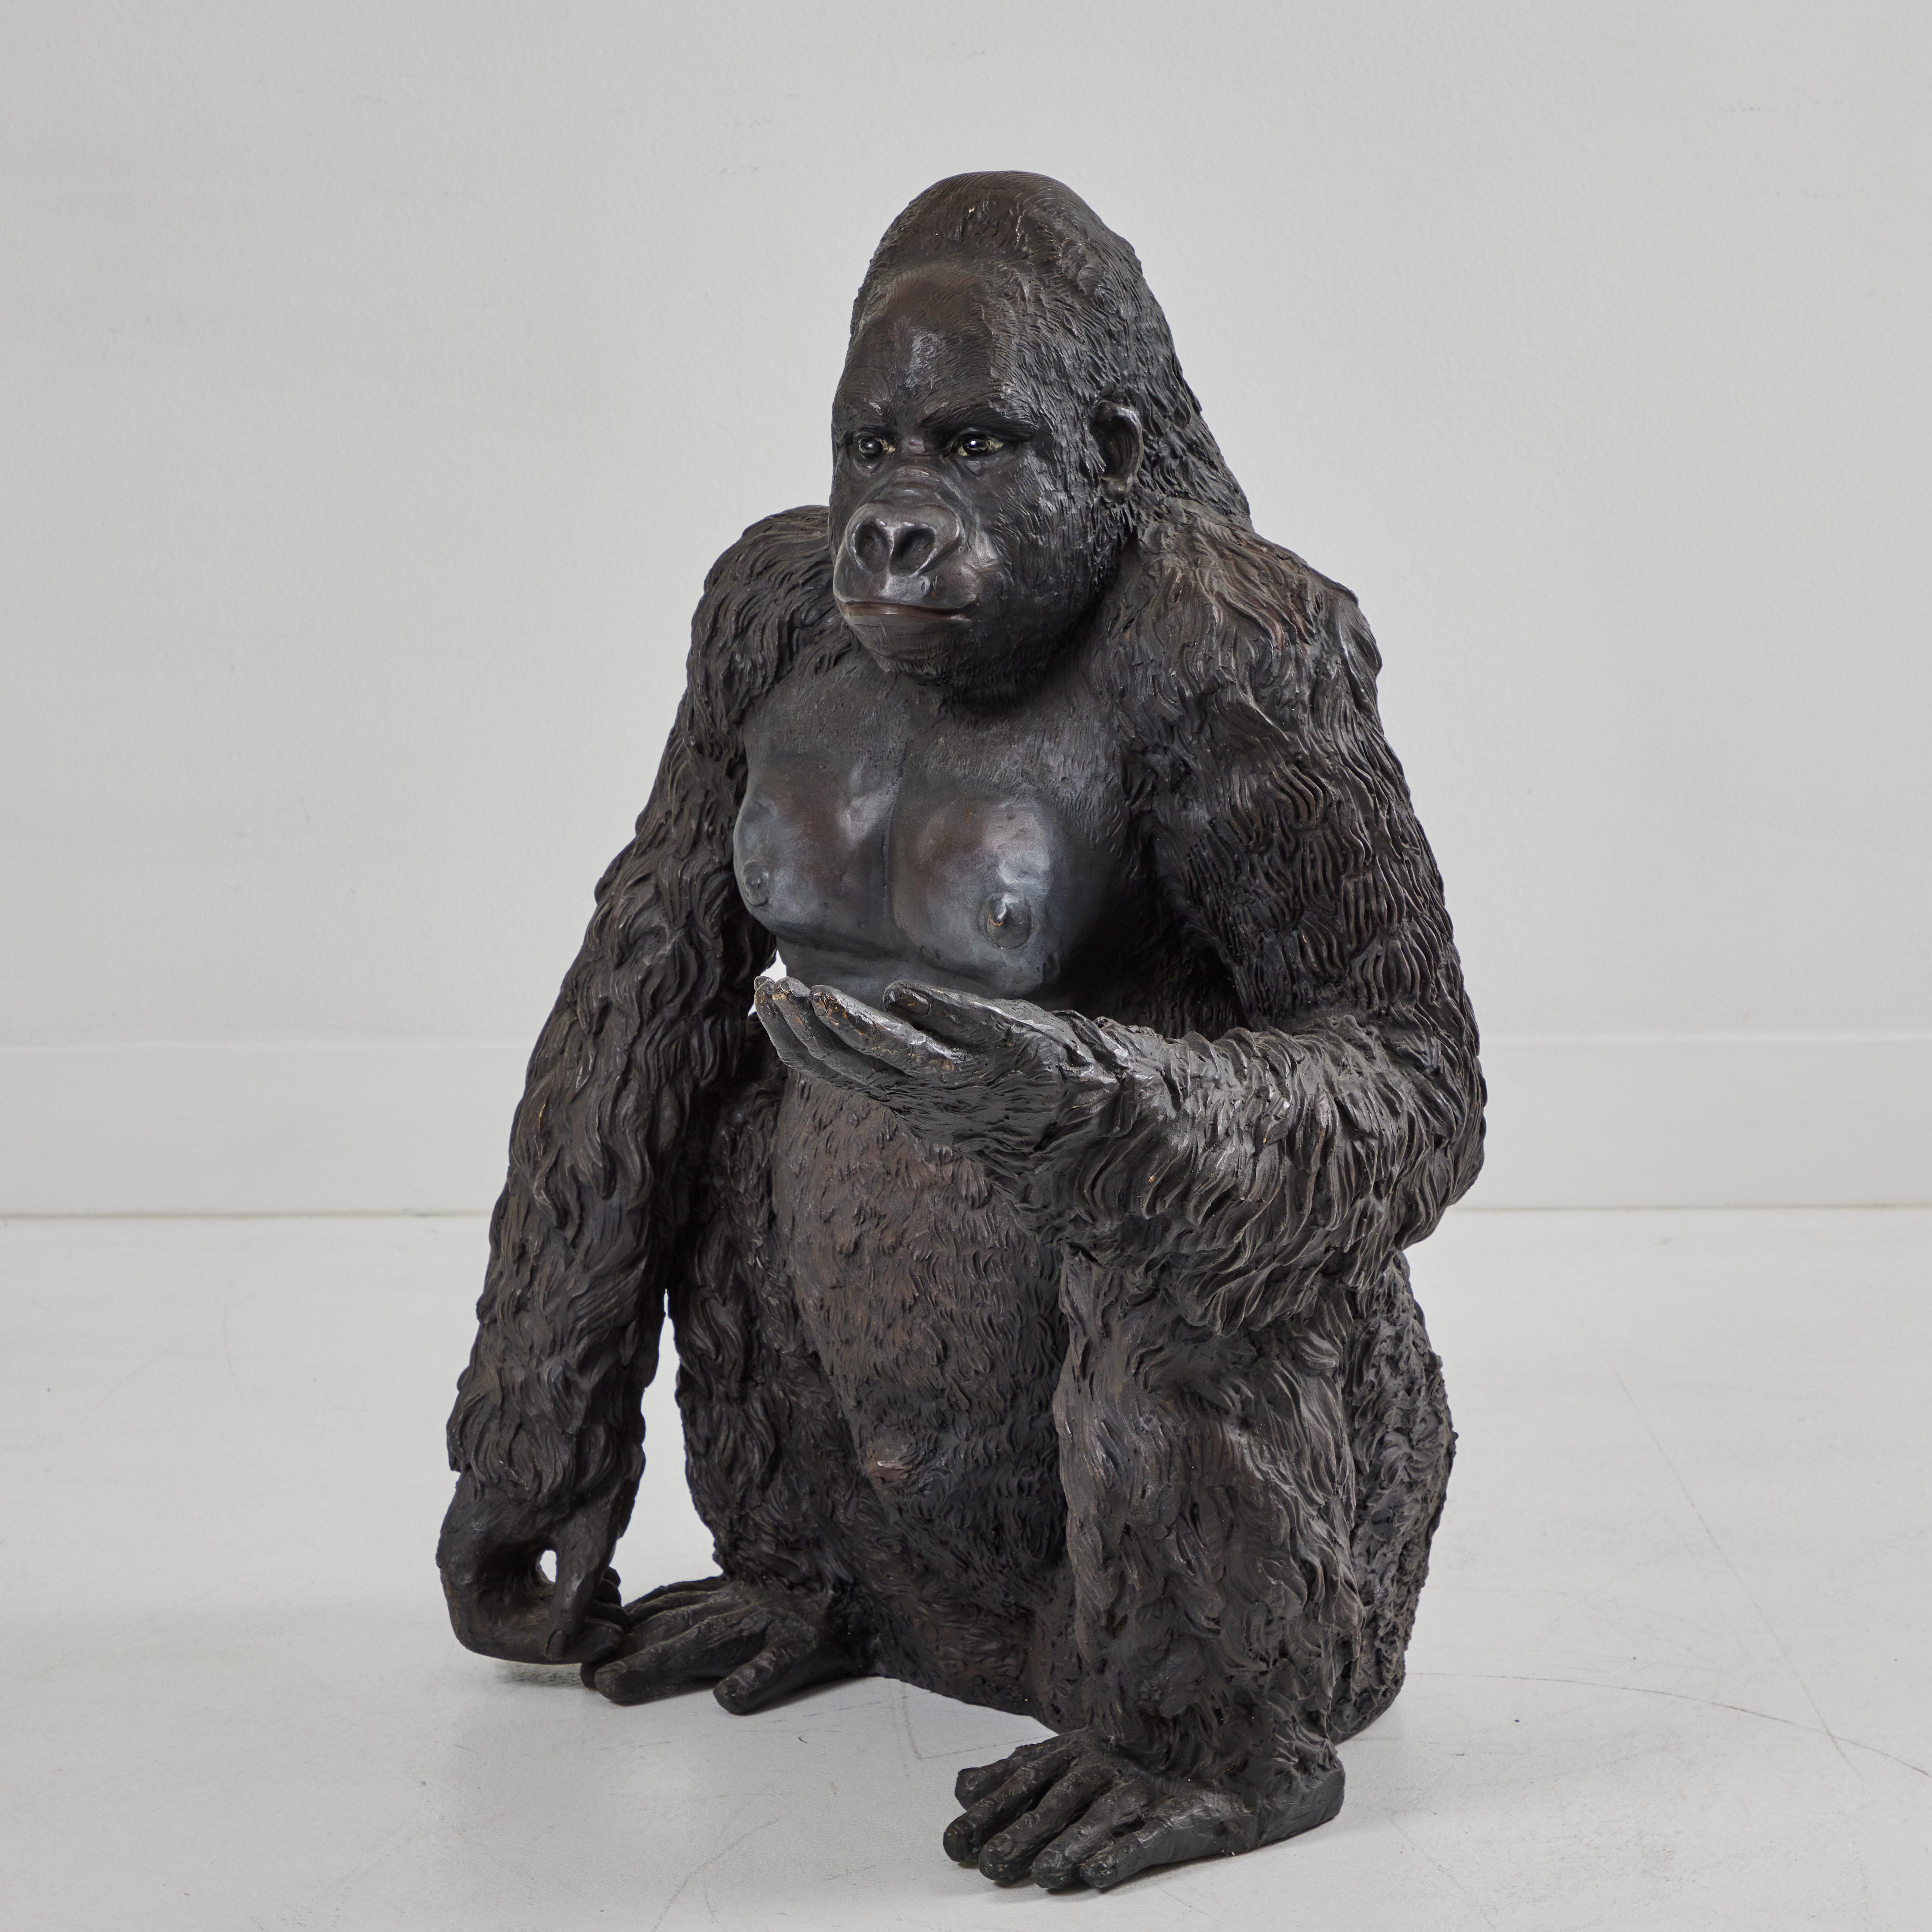 Ce gorille en bronze est assis astucieusement, la main gauche tendue et le bras droit détendu vers le sol. Les yeux en verre sont noirs et reflètent la lumière environnante, ce qui donne à cet animal un visage compatissant et vivant. La sculpture